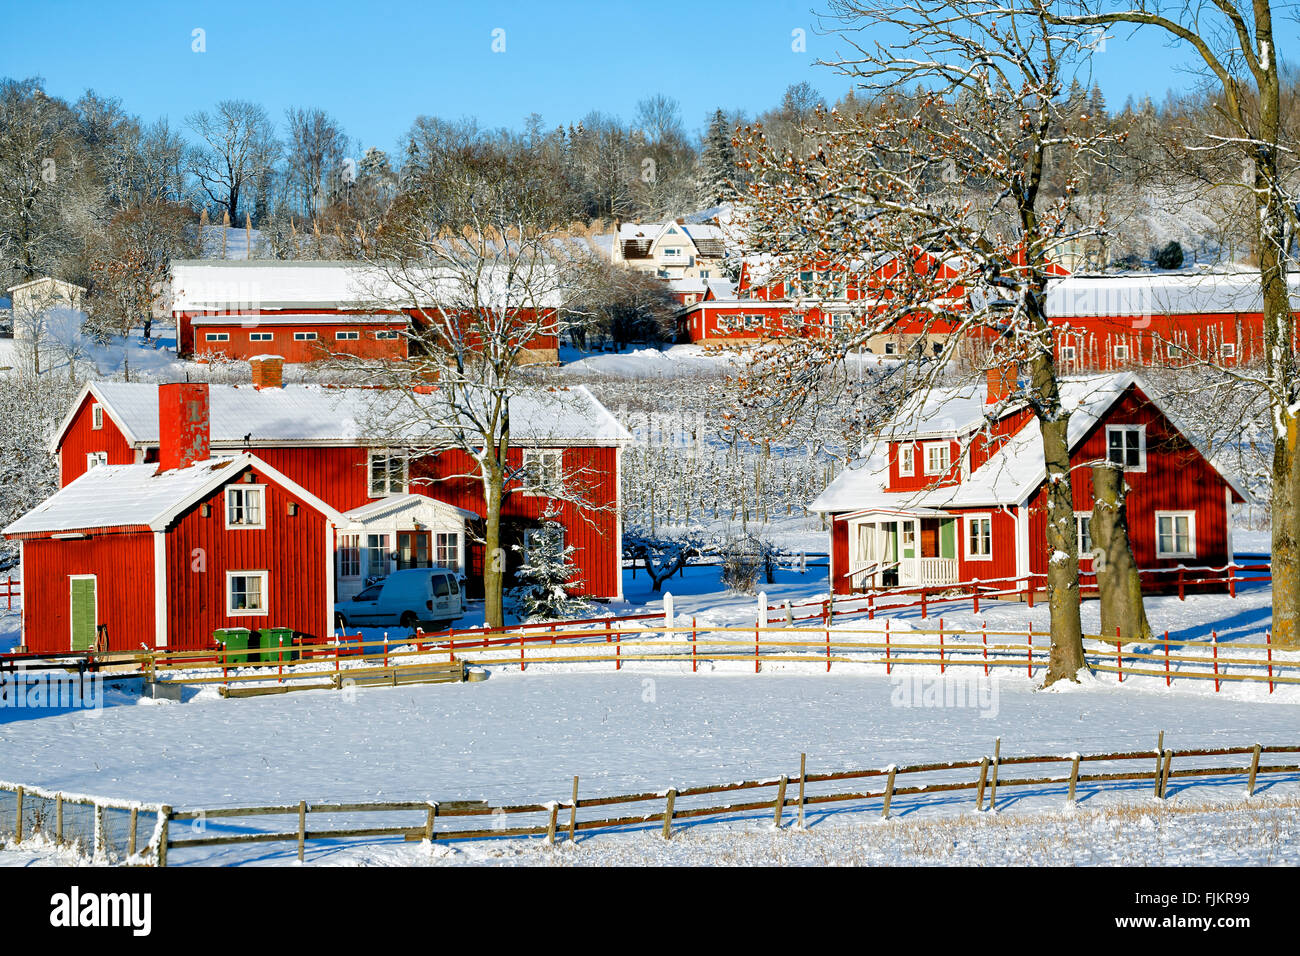 Vieille ferme rouge les maisons, les chalets en hiver neige Banque D'Images